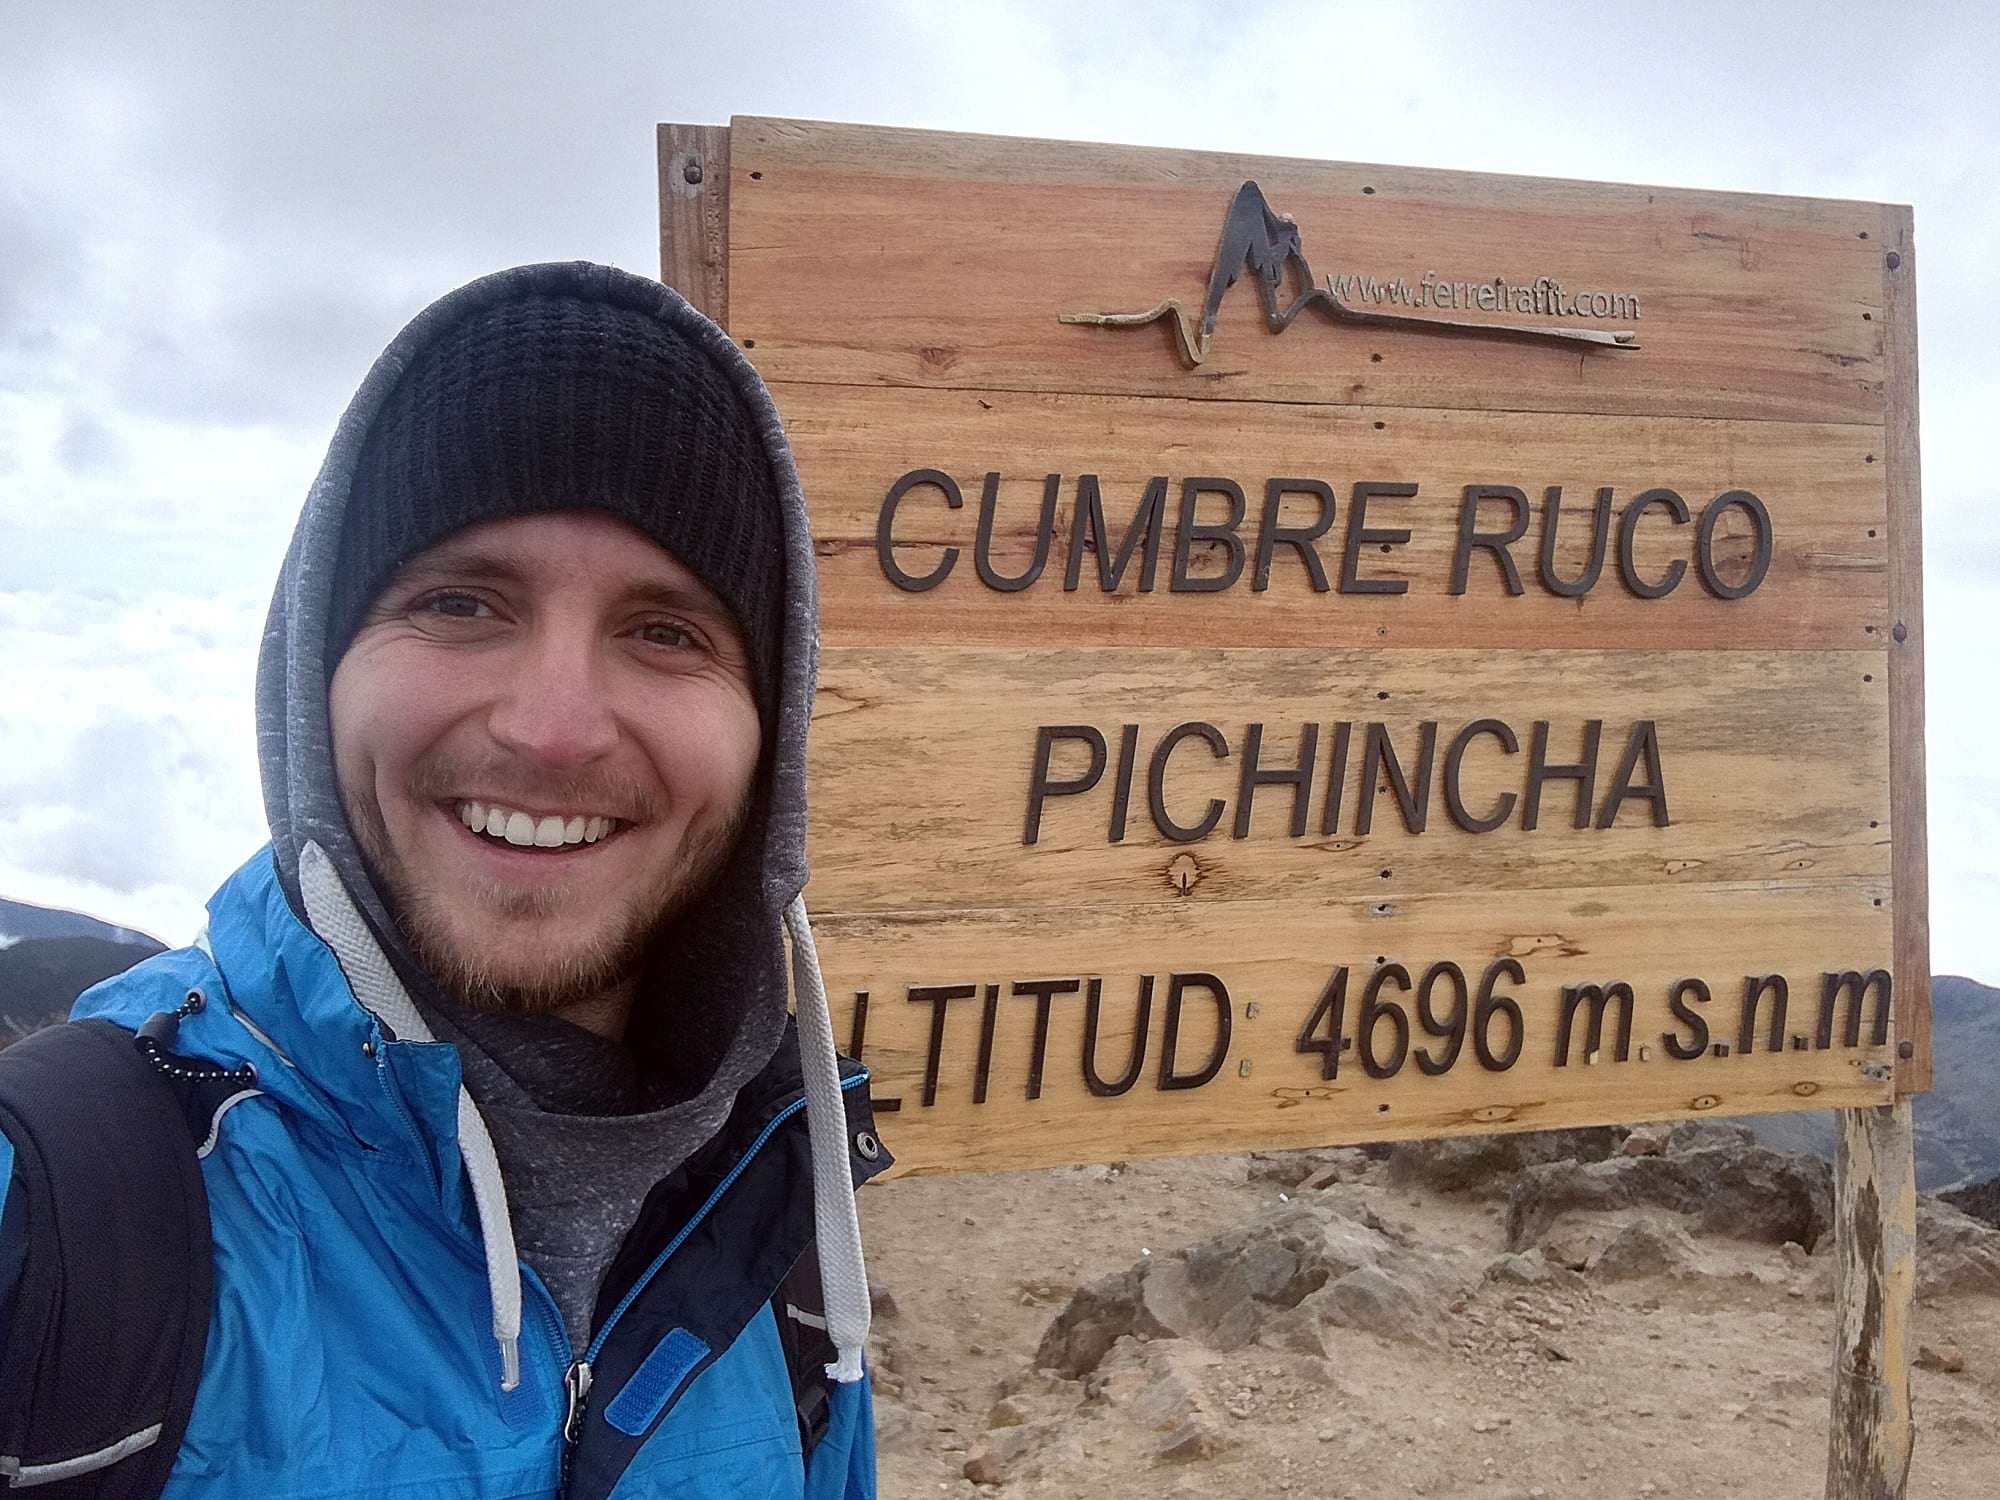 Mann vor einem Schild mit der Aufschrift "Cumbre Ruco Pichinicha 4696 m.s.n.m."